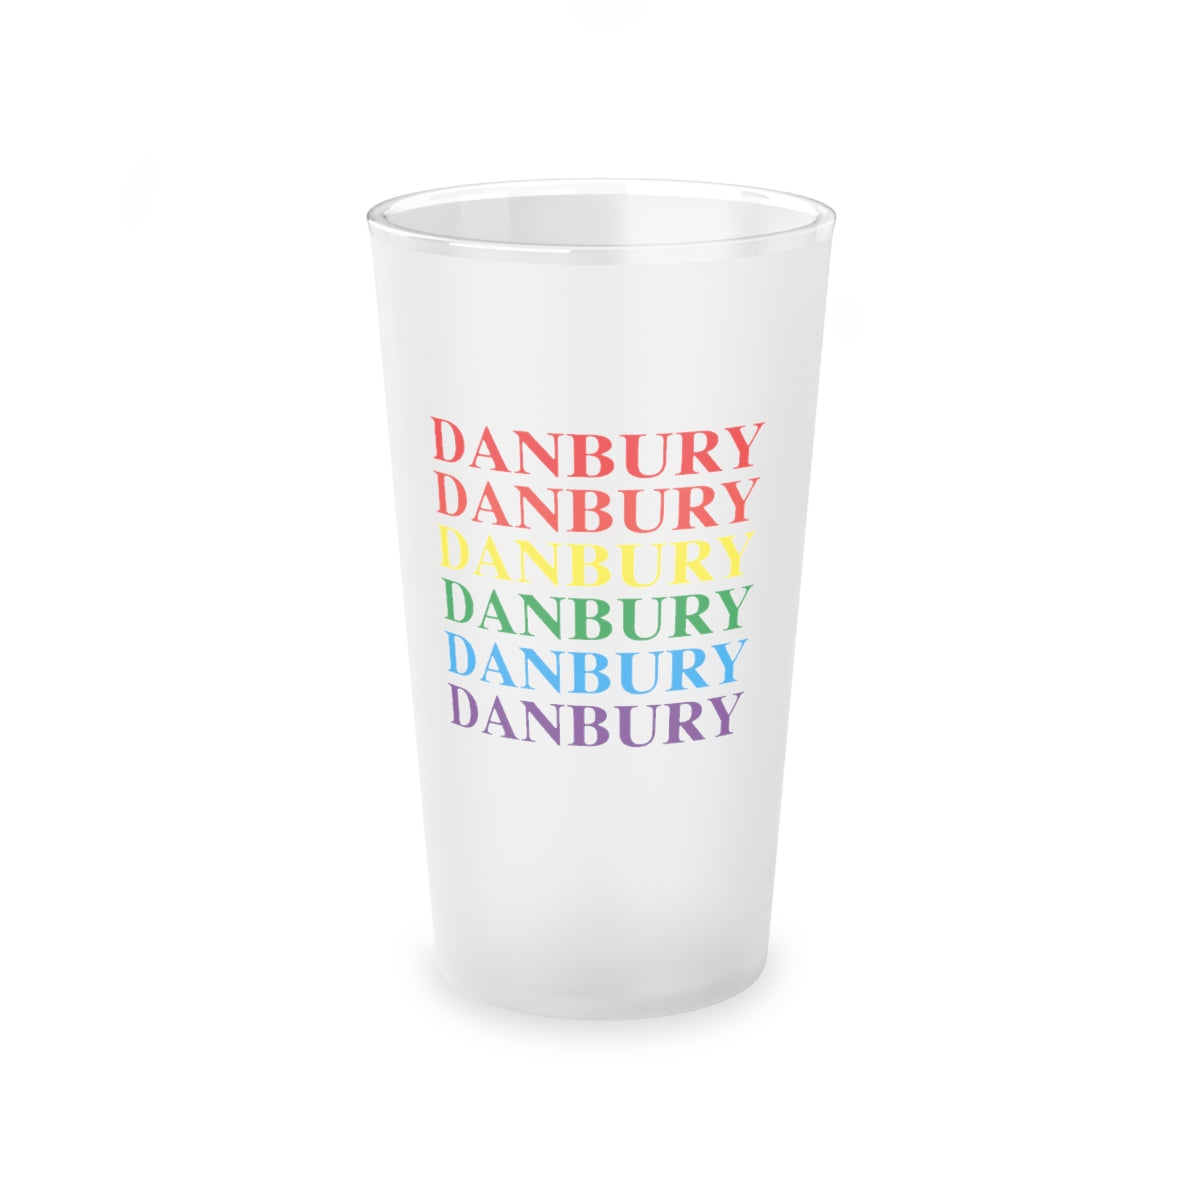 Danbury ct pride pint glass